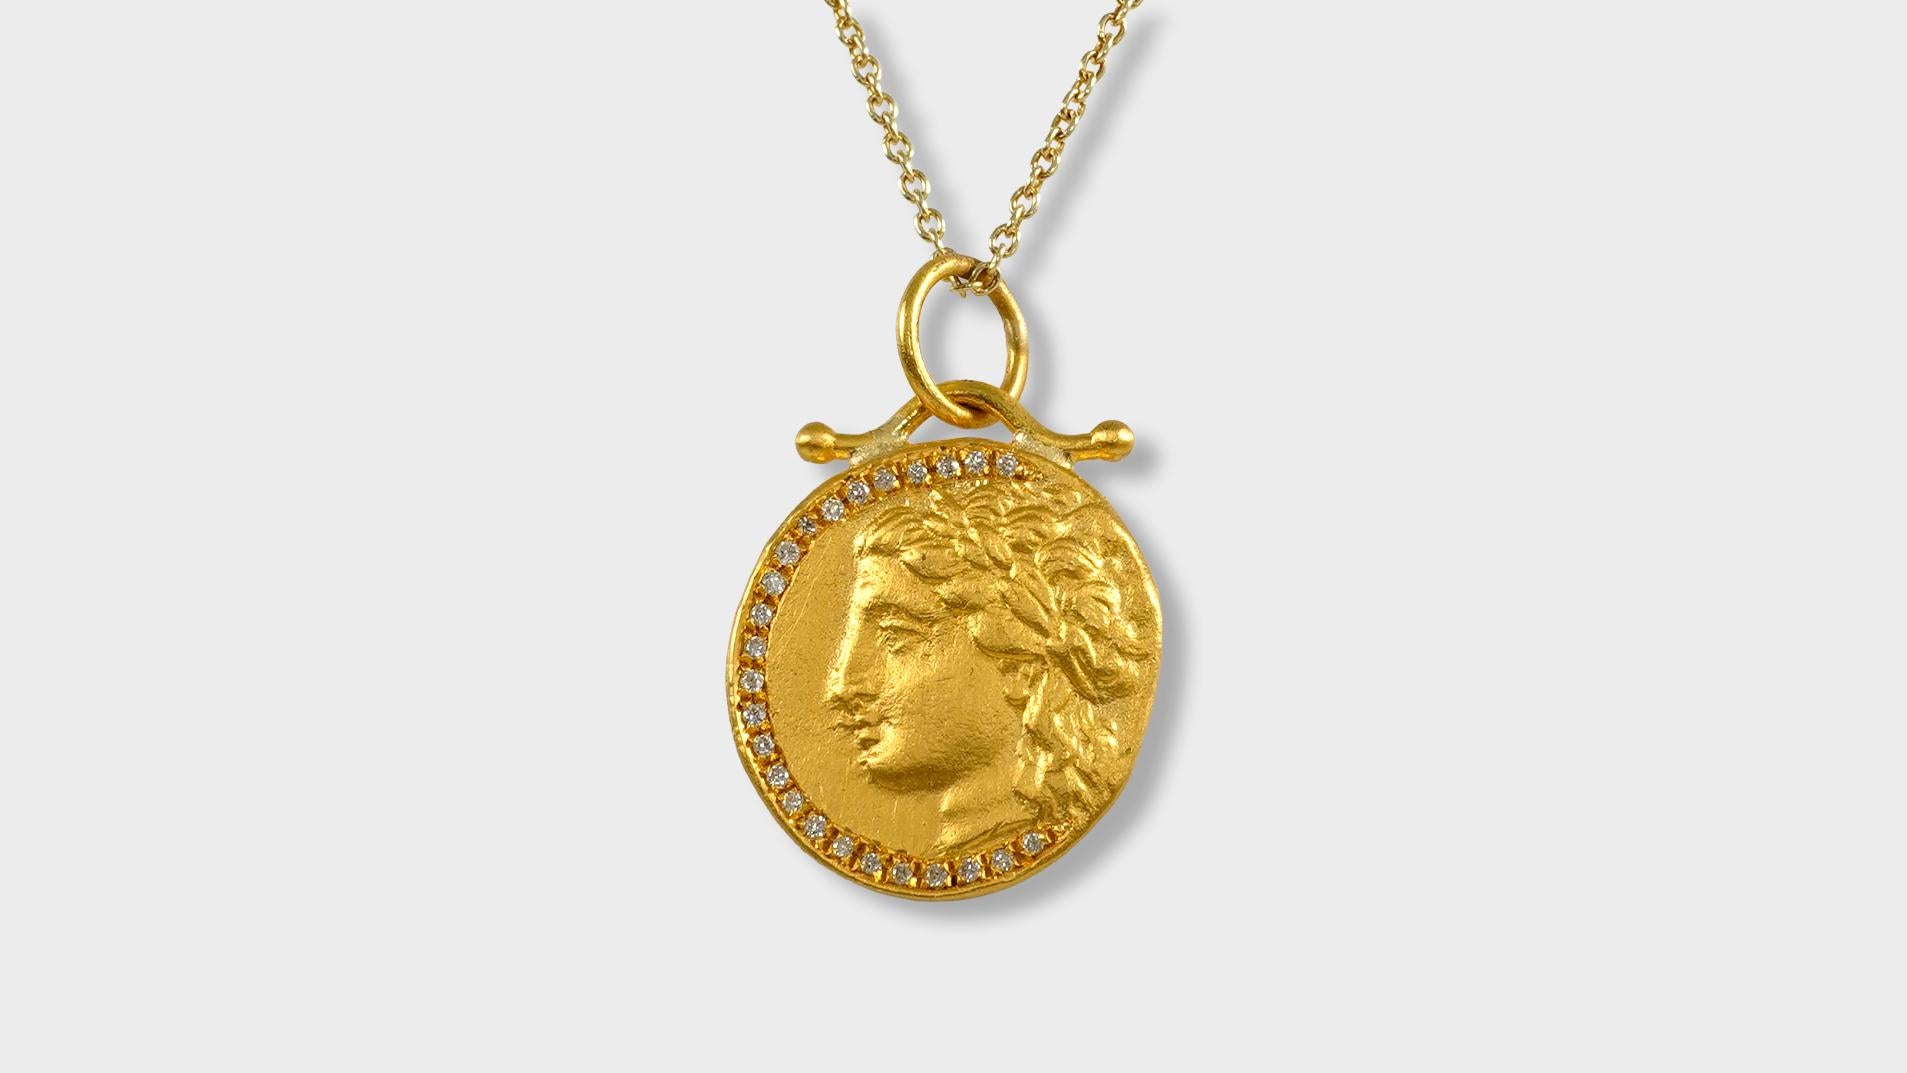 Déesse de la Grèce antique, pendentif tétradrachme en or jaune massif 24 carats et 0,09 carat de diamants (réplique)

La pièce de la déesse grecque est une réplique de pièces de monnaie anciennes conservées au musée turc. 

DÉTAILS :

25 diamants -